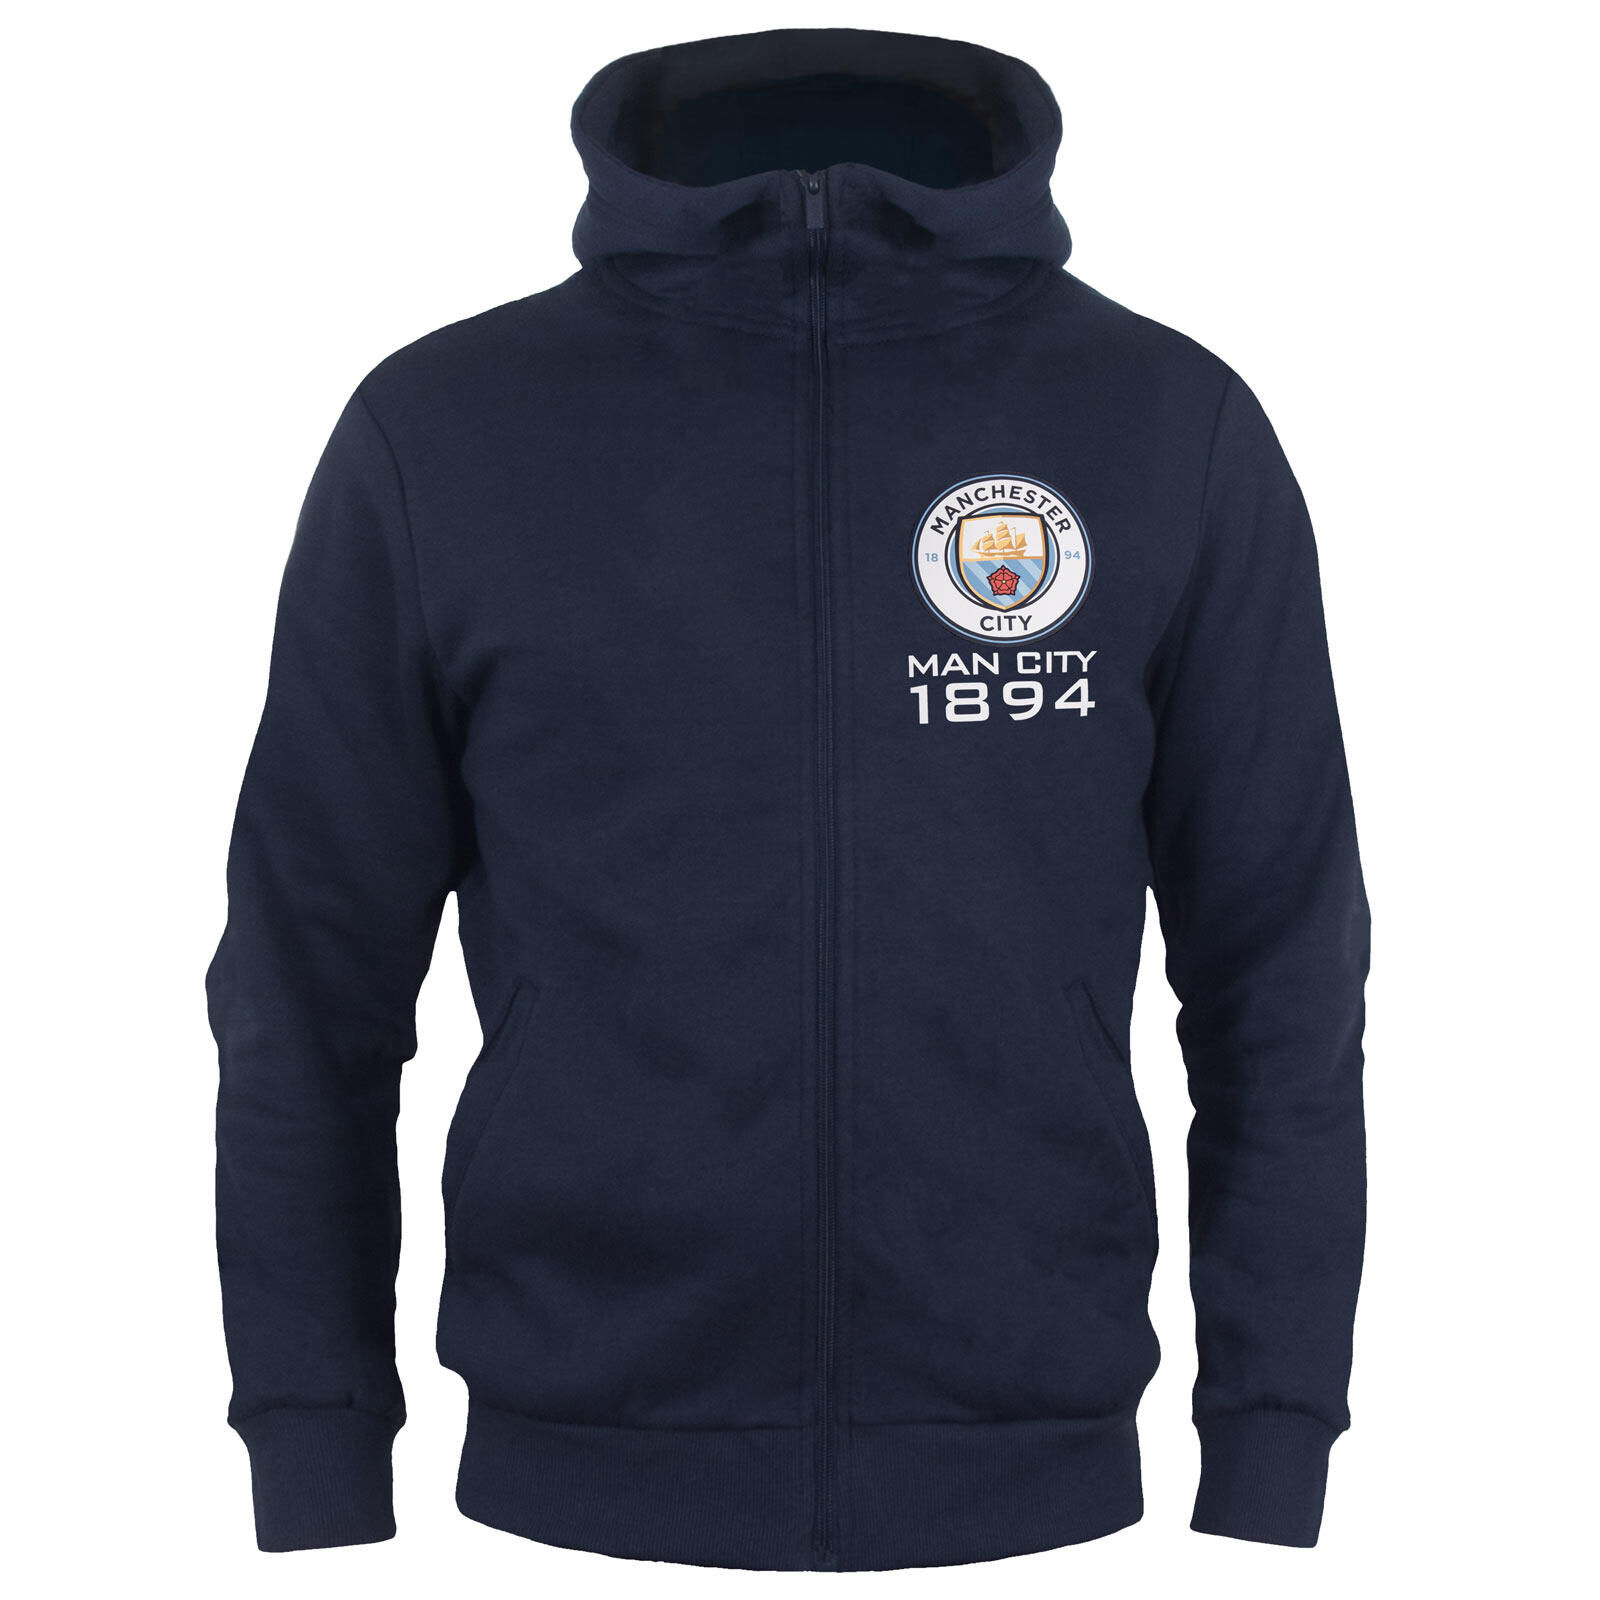 MANCHESTER CITY Manchester City Boys Hoody Zip Fleece Kids OFFICIAL Football Gift